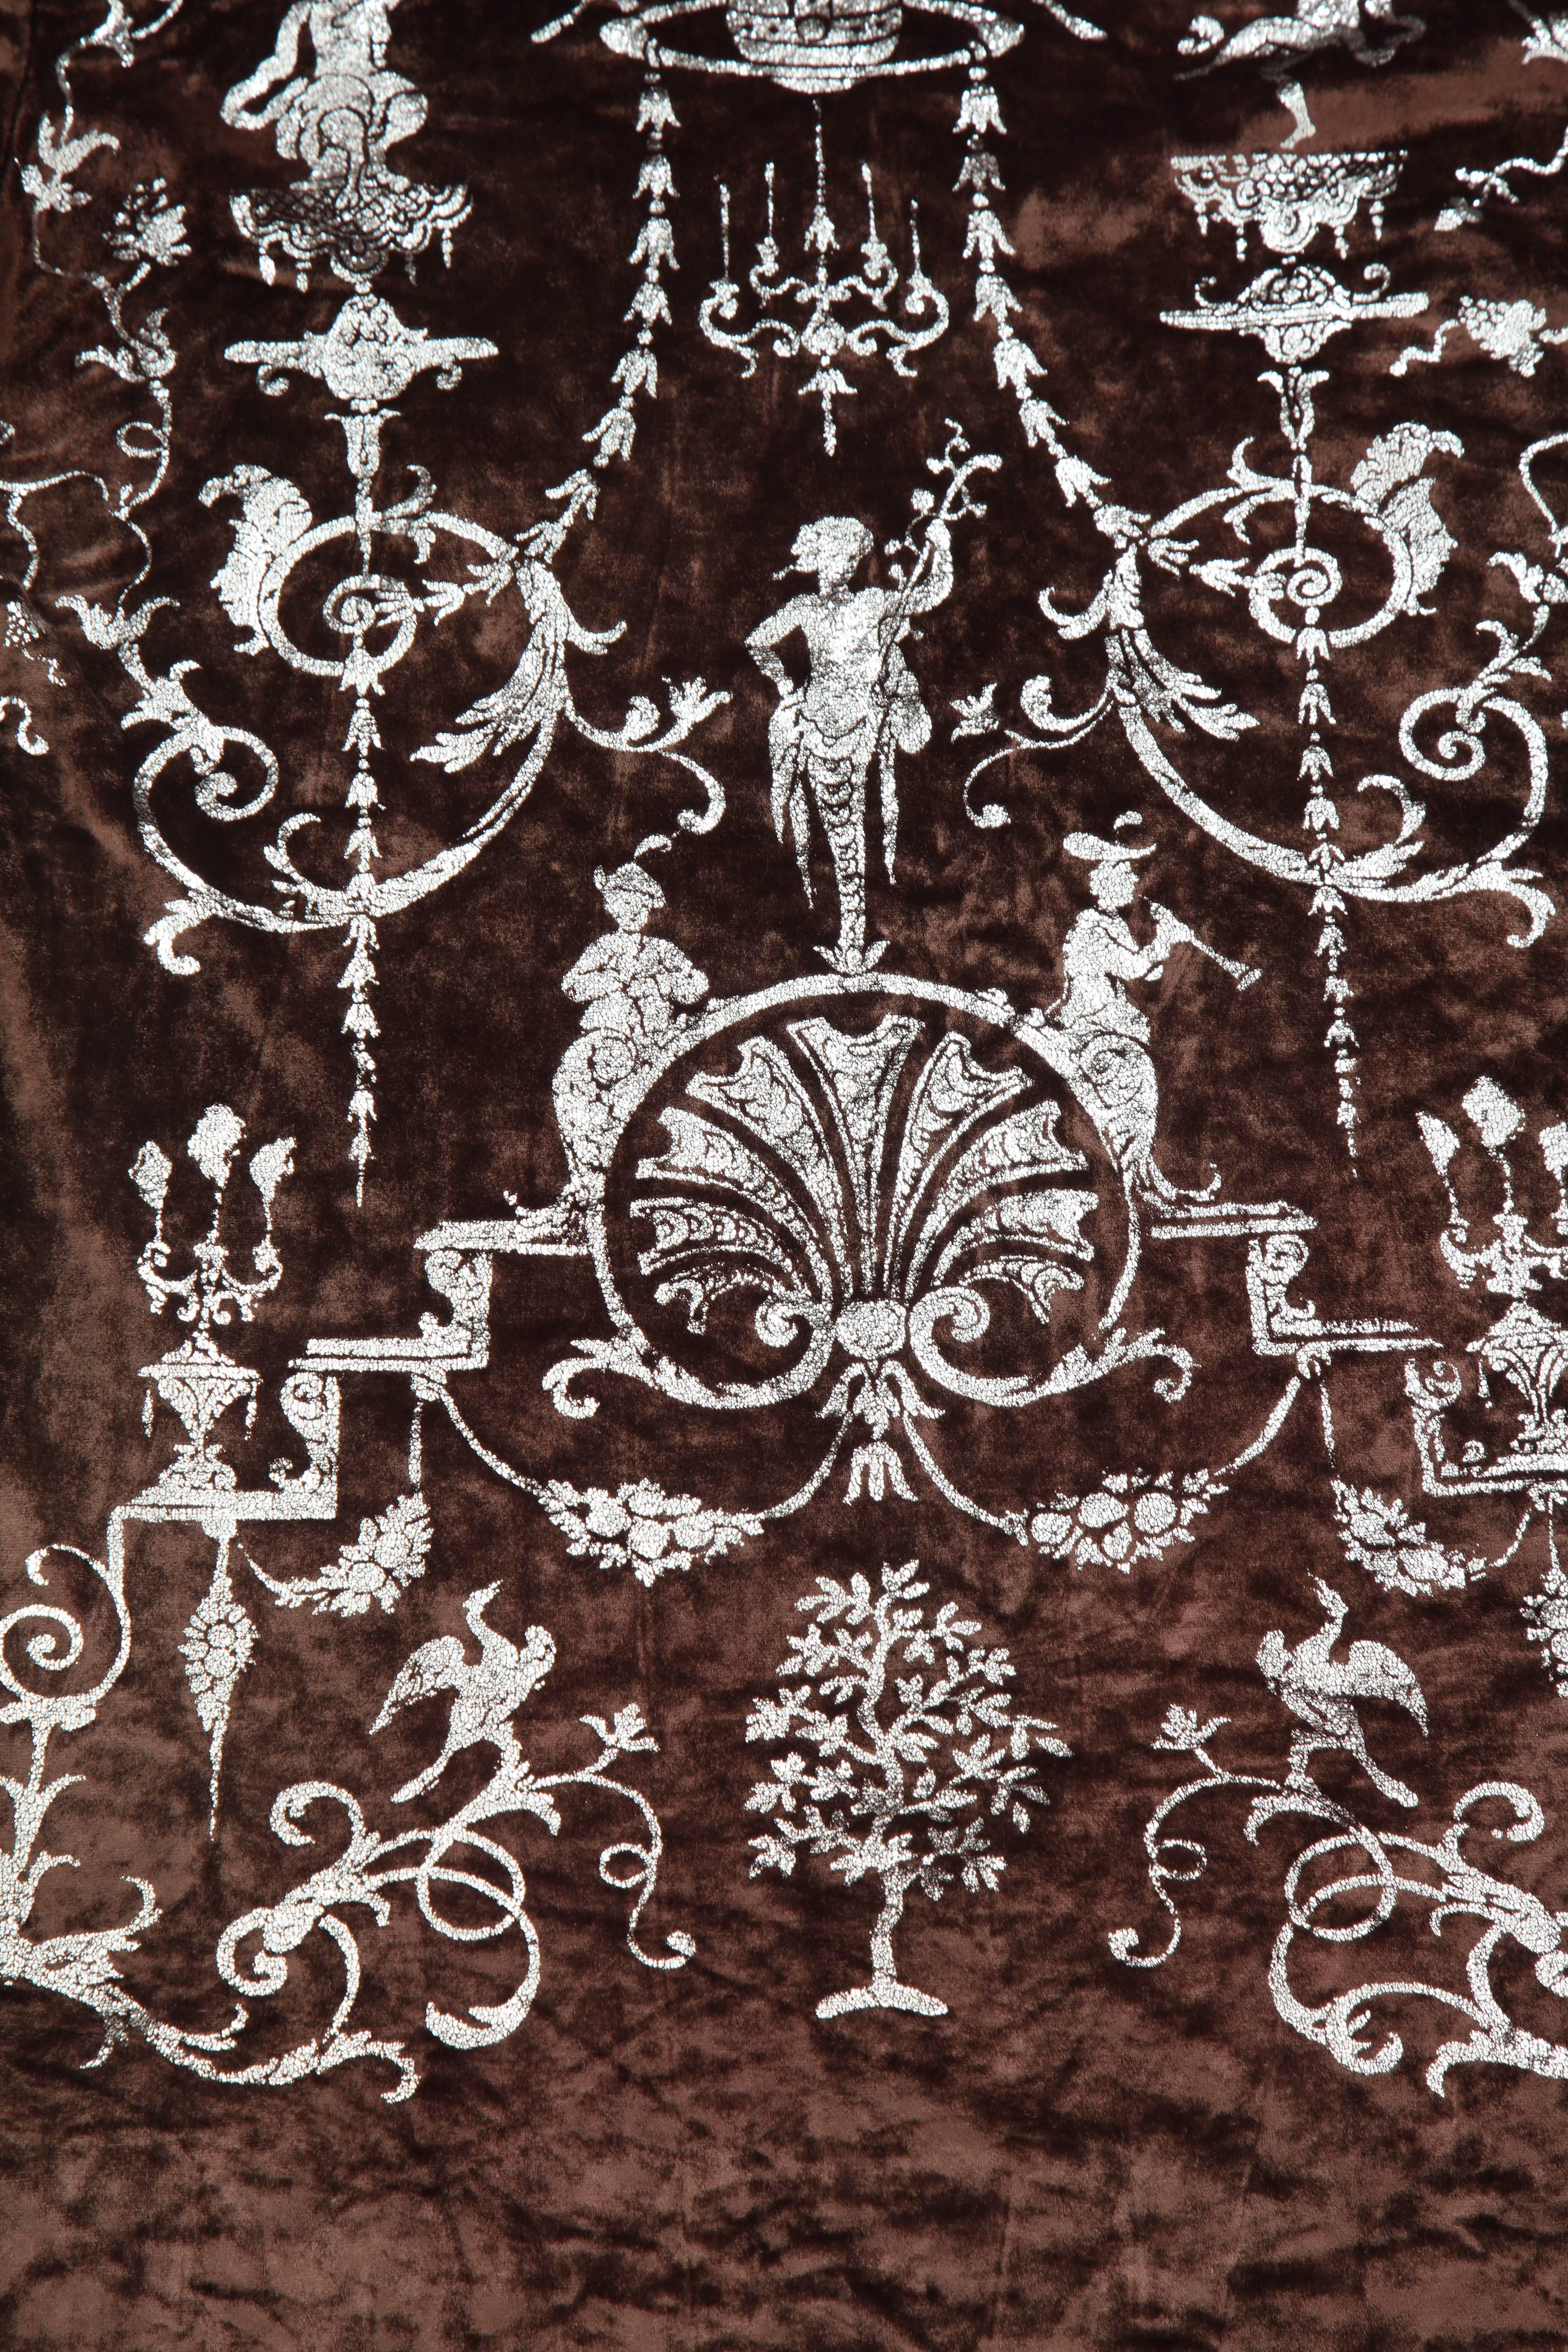 Seltene Vivienne Westwood Herbst/Winter 1990 'Portrait Kollektion'
Oberteil aus brauner Viskose, bedruckt mit einem silbernen neoklassizistischen Muster, inspiriert von dem Spiegel mit Intarsien von André-Charles Boulle (1713) 
 Ausgezeichneter